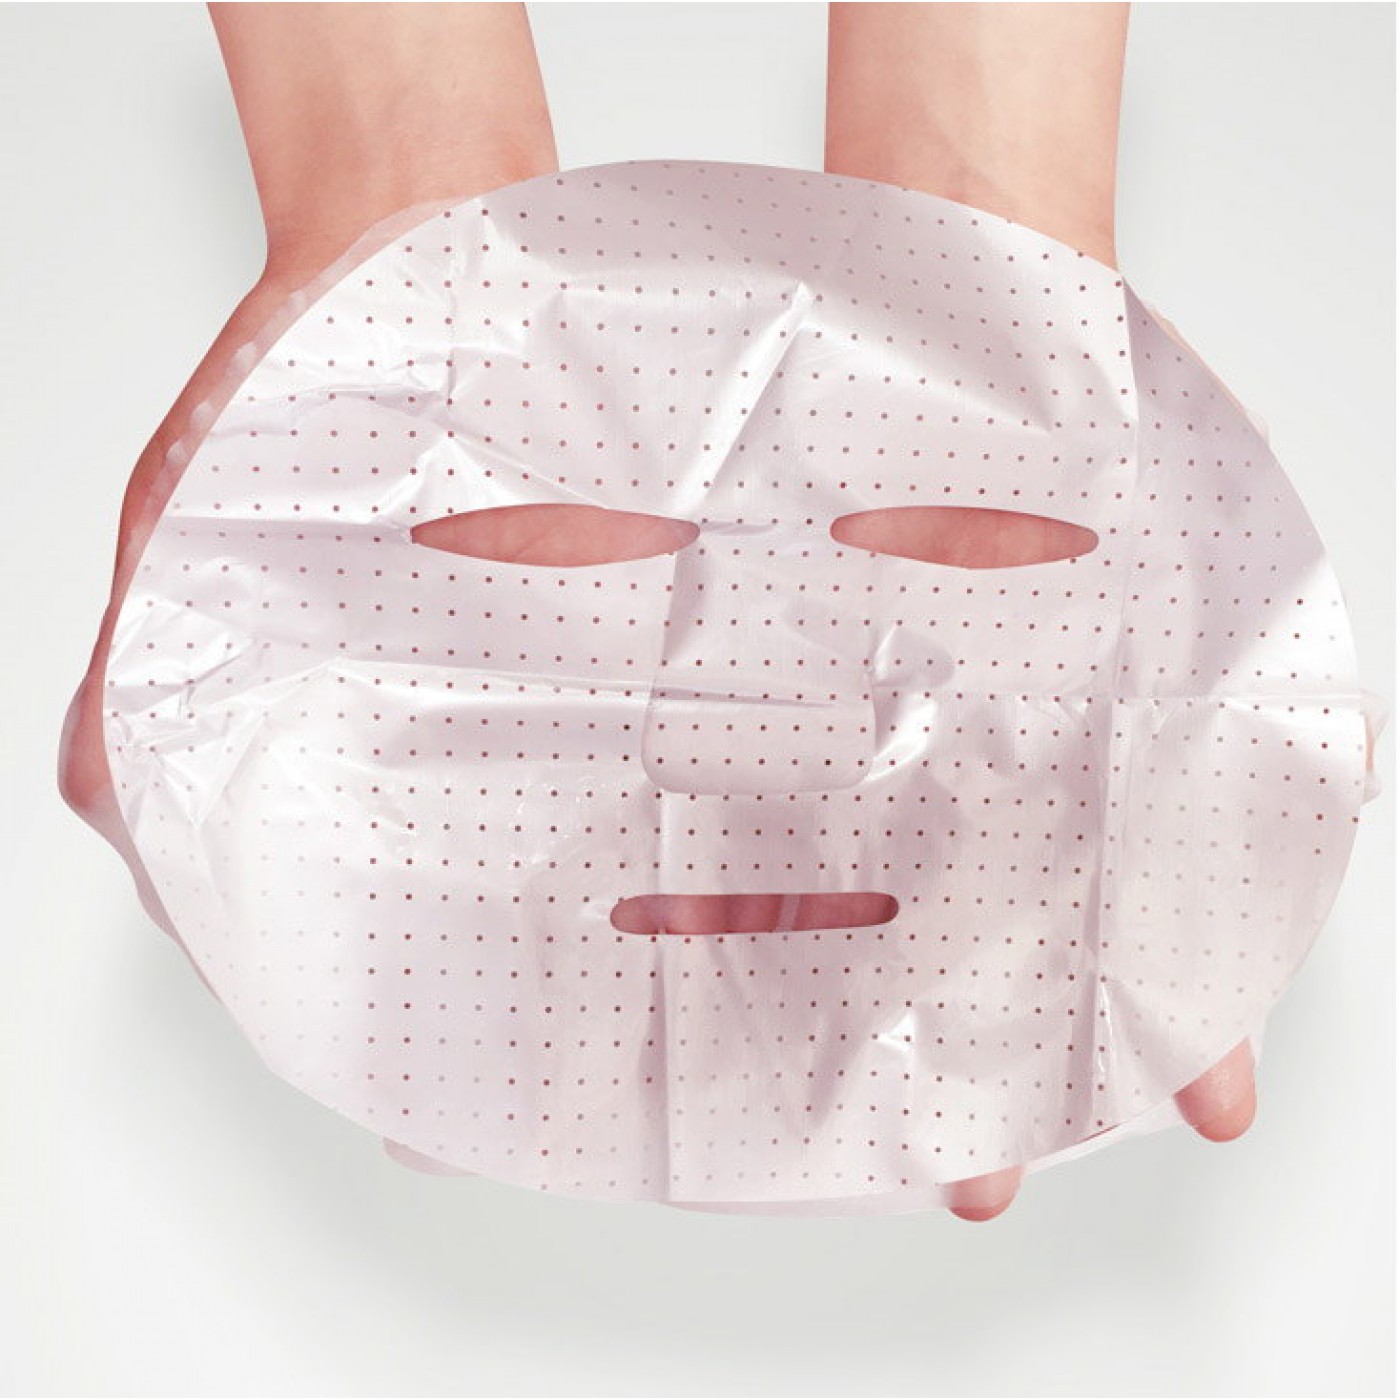 Как использовать корейскую маску. Маска для лица. Тканевые маски для лица. Маски для лица упаковка. Матерчатая маска для лица.